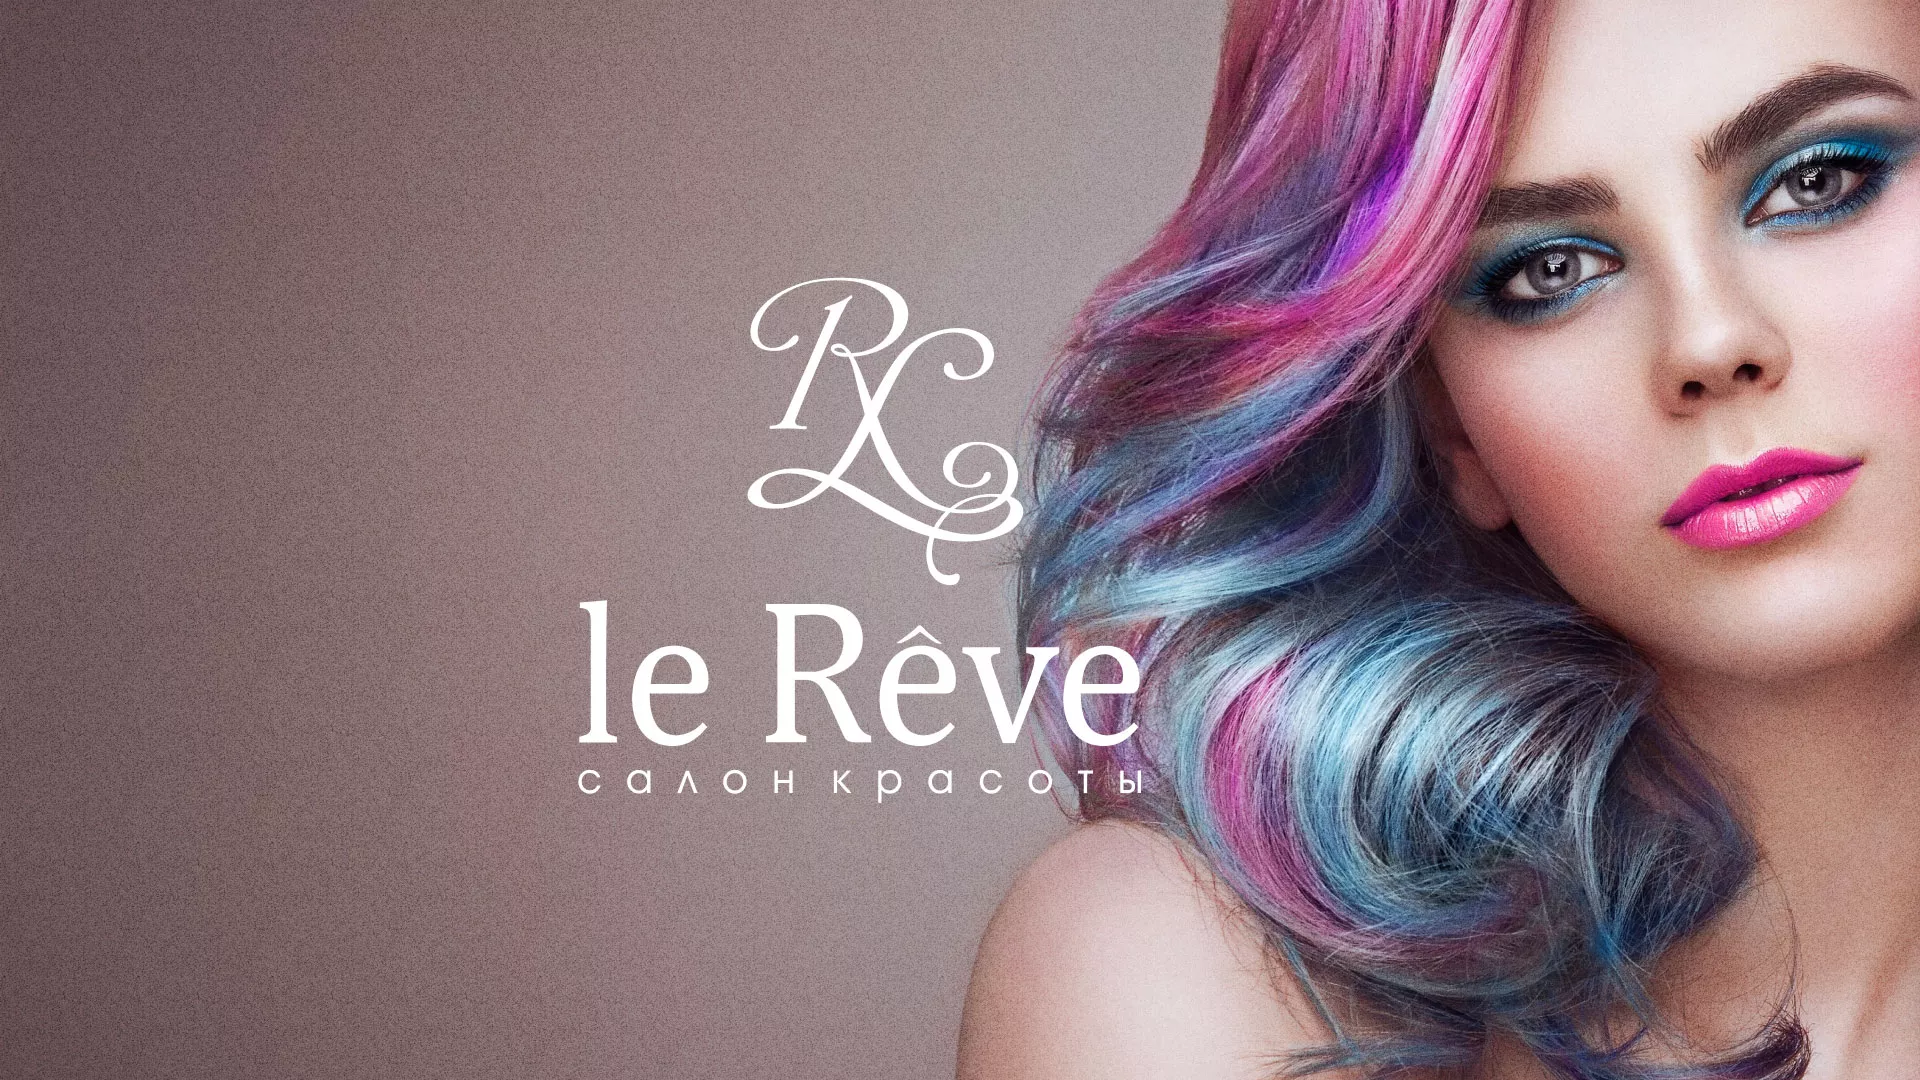 Создание сайта для салона красоты «Le Reve» в Подольске